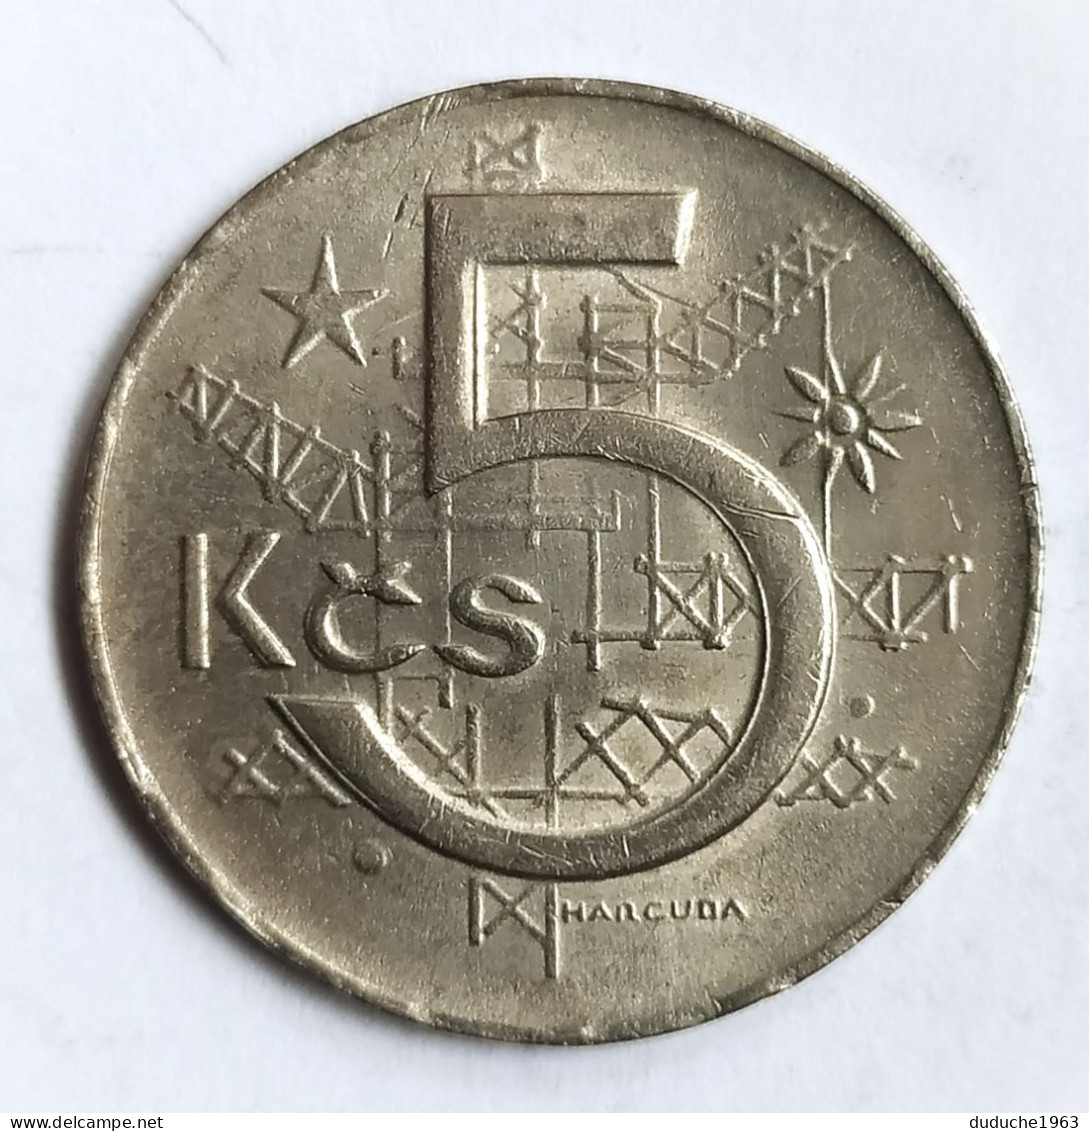 Tchécoslovaquie - 5 Korun 1984 - Tchécoslovaquie